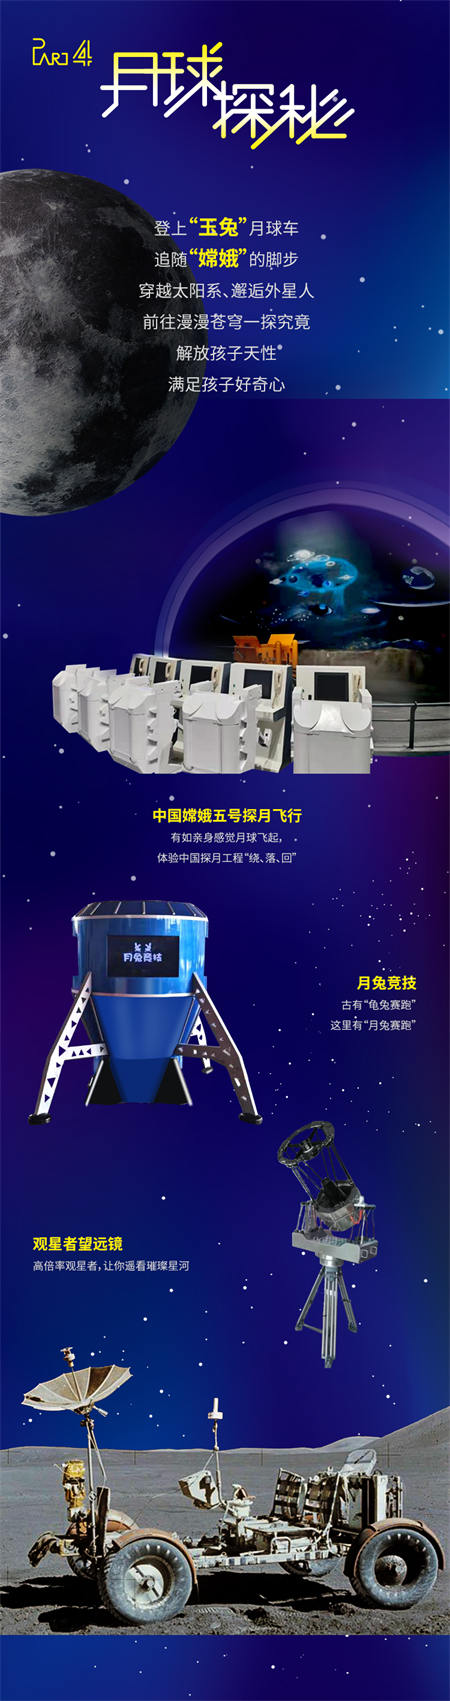 9月深圳航天科学嘉年华展览会演出介绍